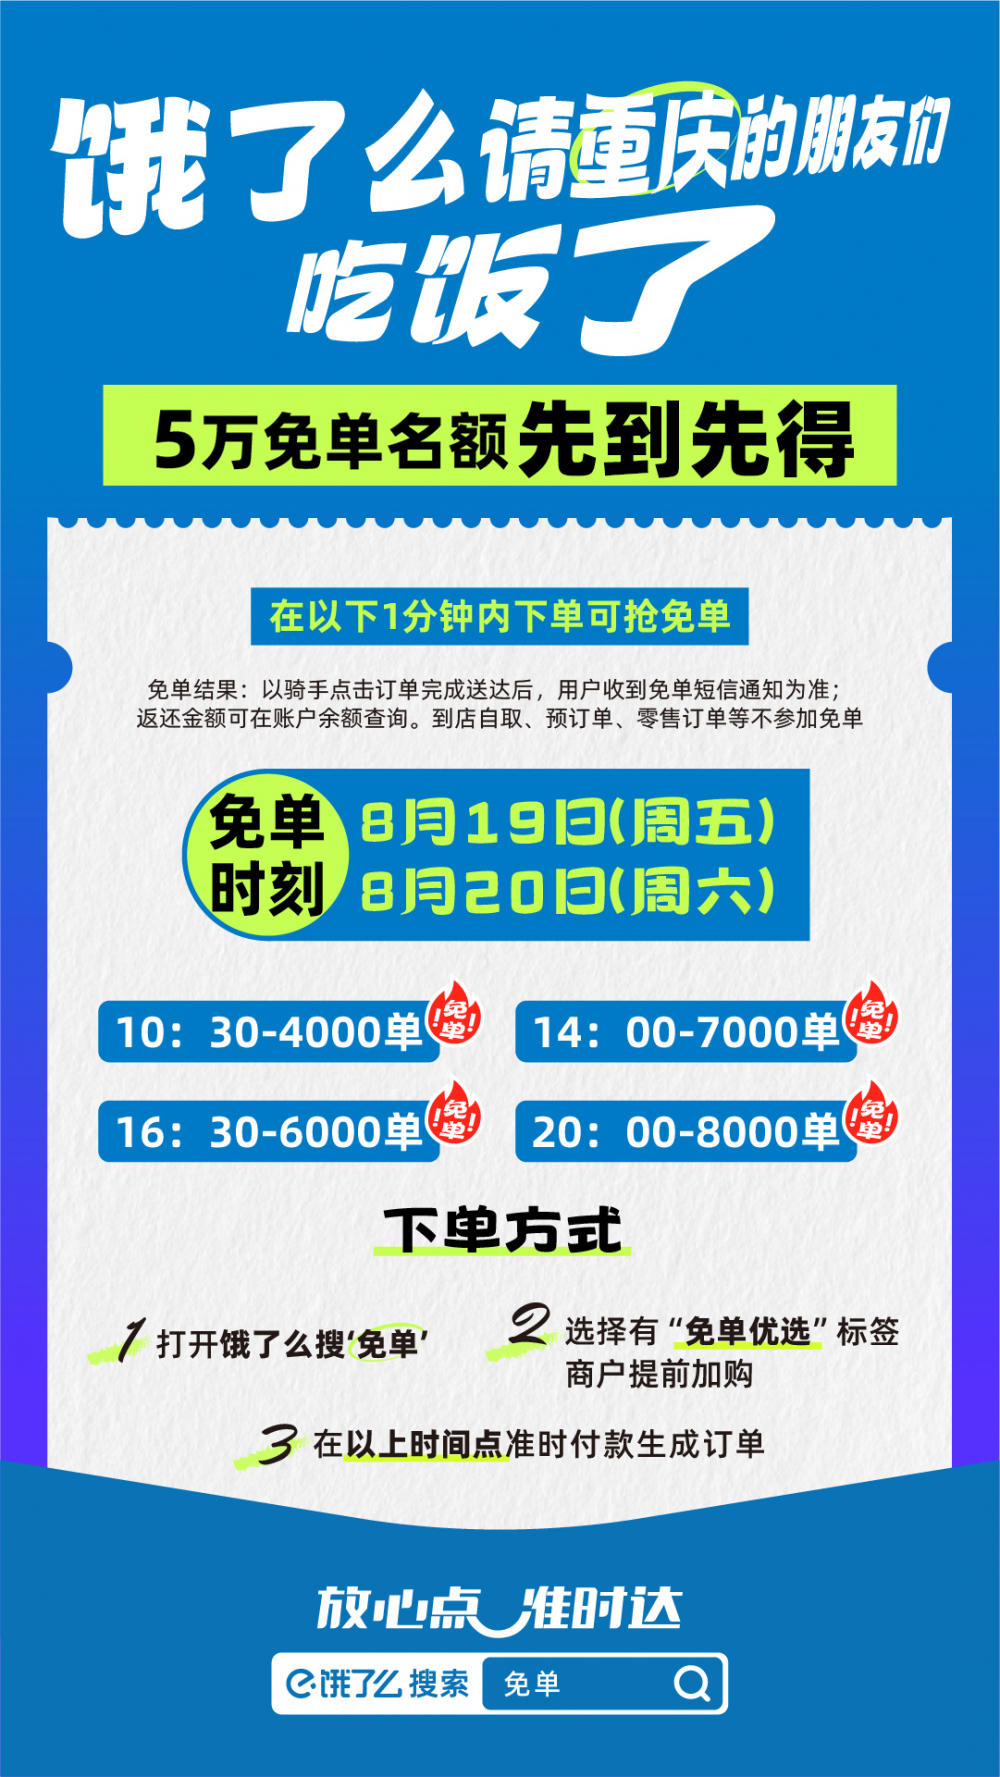 “城市专场免单”又来啦！本周饿了么请5万名重庆市民“免费吃饭”